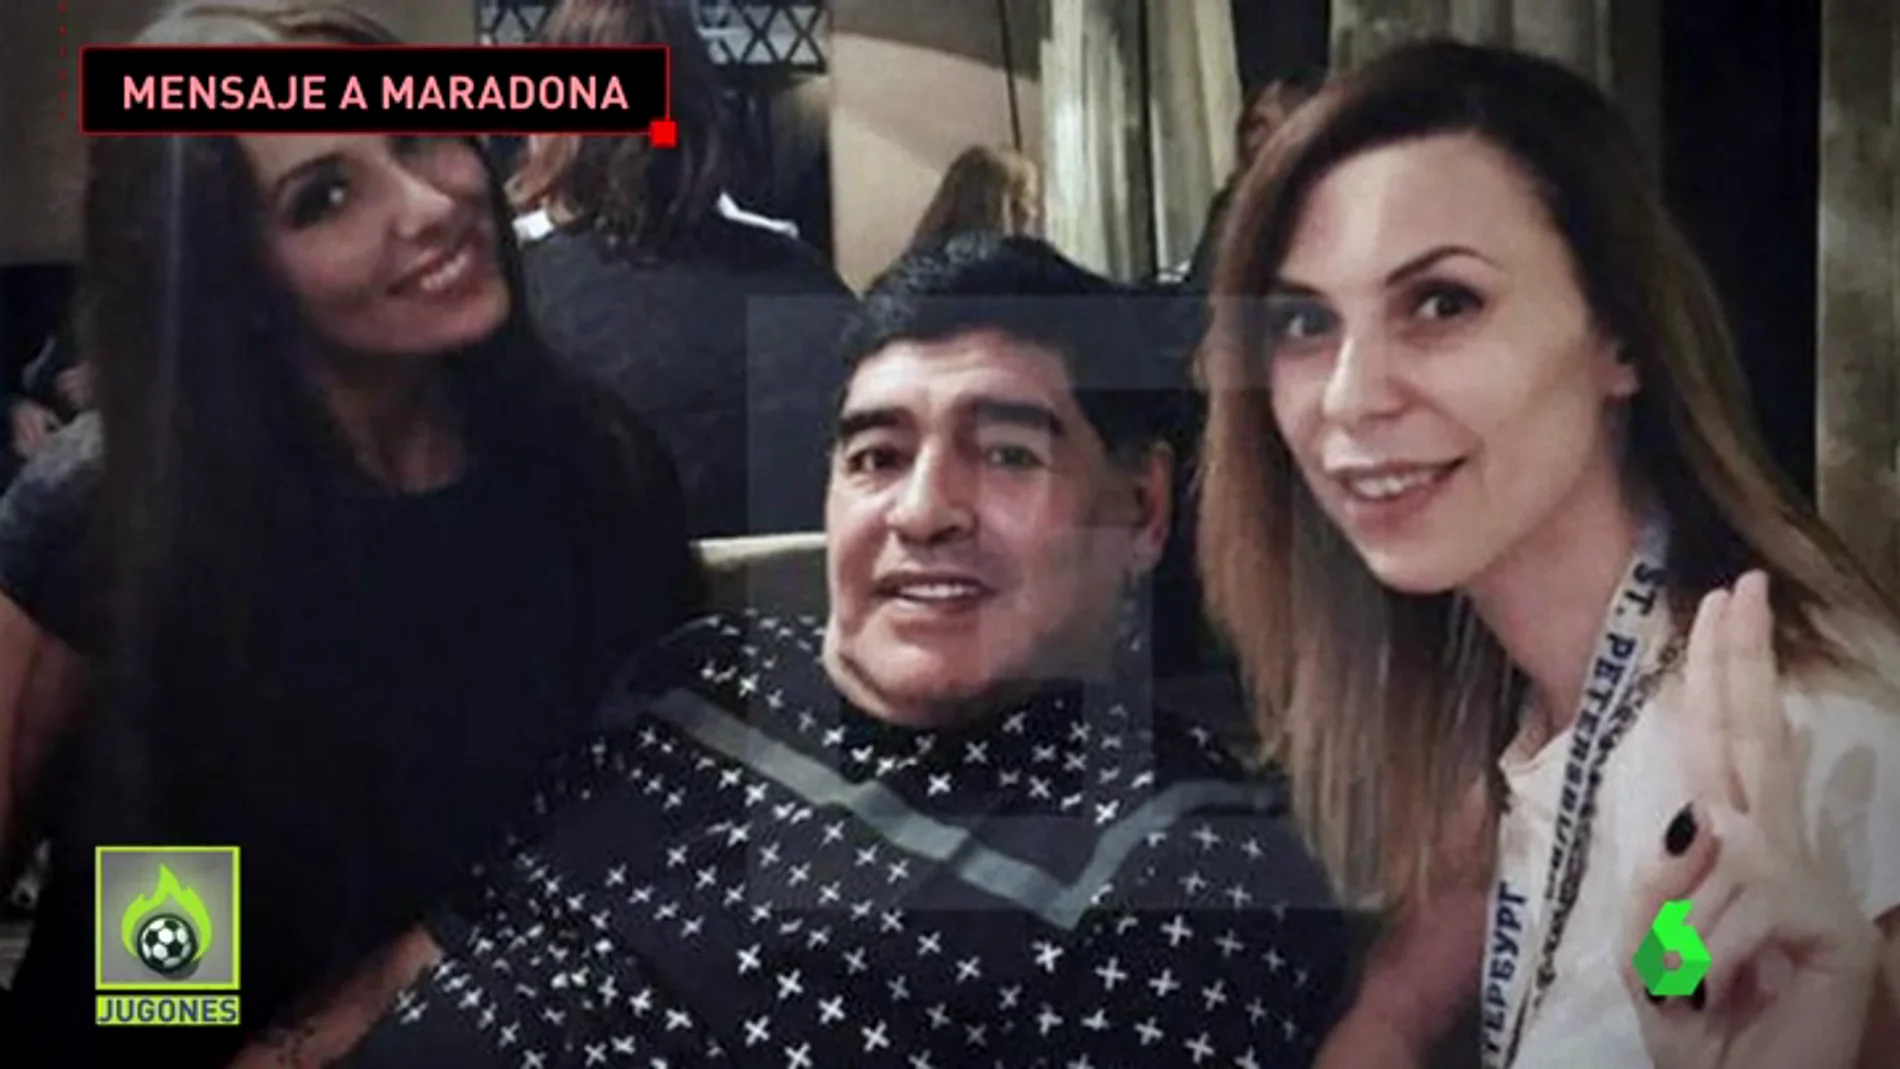 El abogado de Maradona defiende al 'Pelusa' tras la acusación de acoso sexual: "Es alguien que quiere recobrar notoriedad"